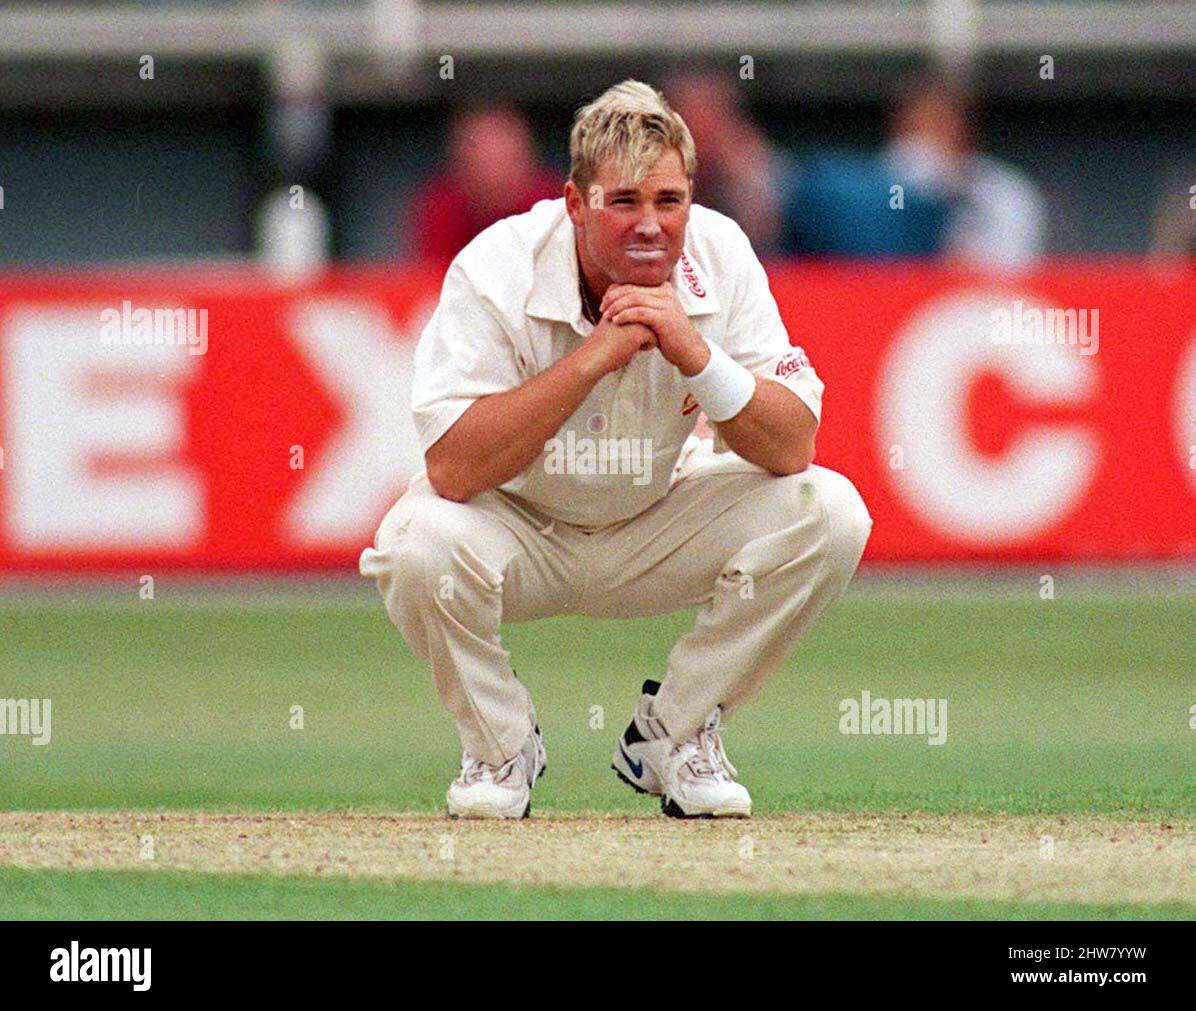 Foto del archivo de fecha 05-06-1997 de la australiana Shane Warne. Shane Warne, ex cricketer australiano, ha muerto a la edad de 52 años, anunció en un comunicado su empresa de gestión MPC Entertainment. Fecha de emisión: Viernes 4 de marzo de 2022. Foto de stock